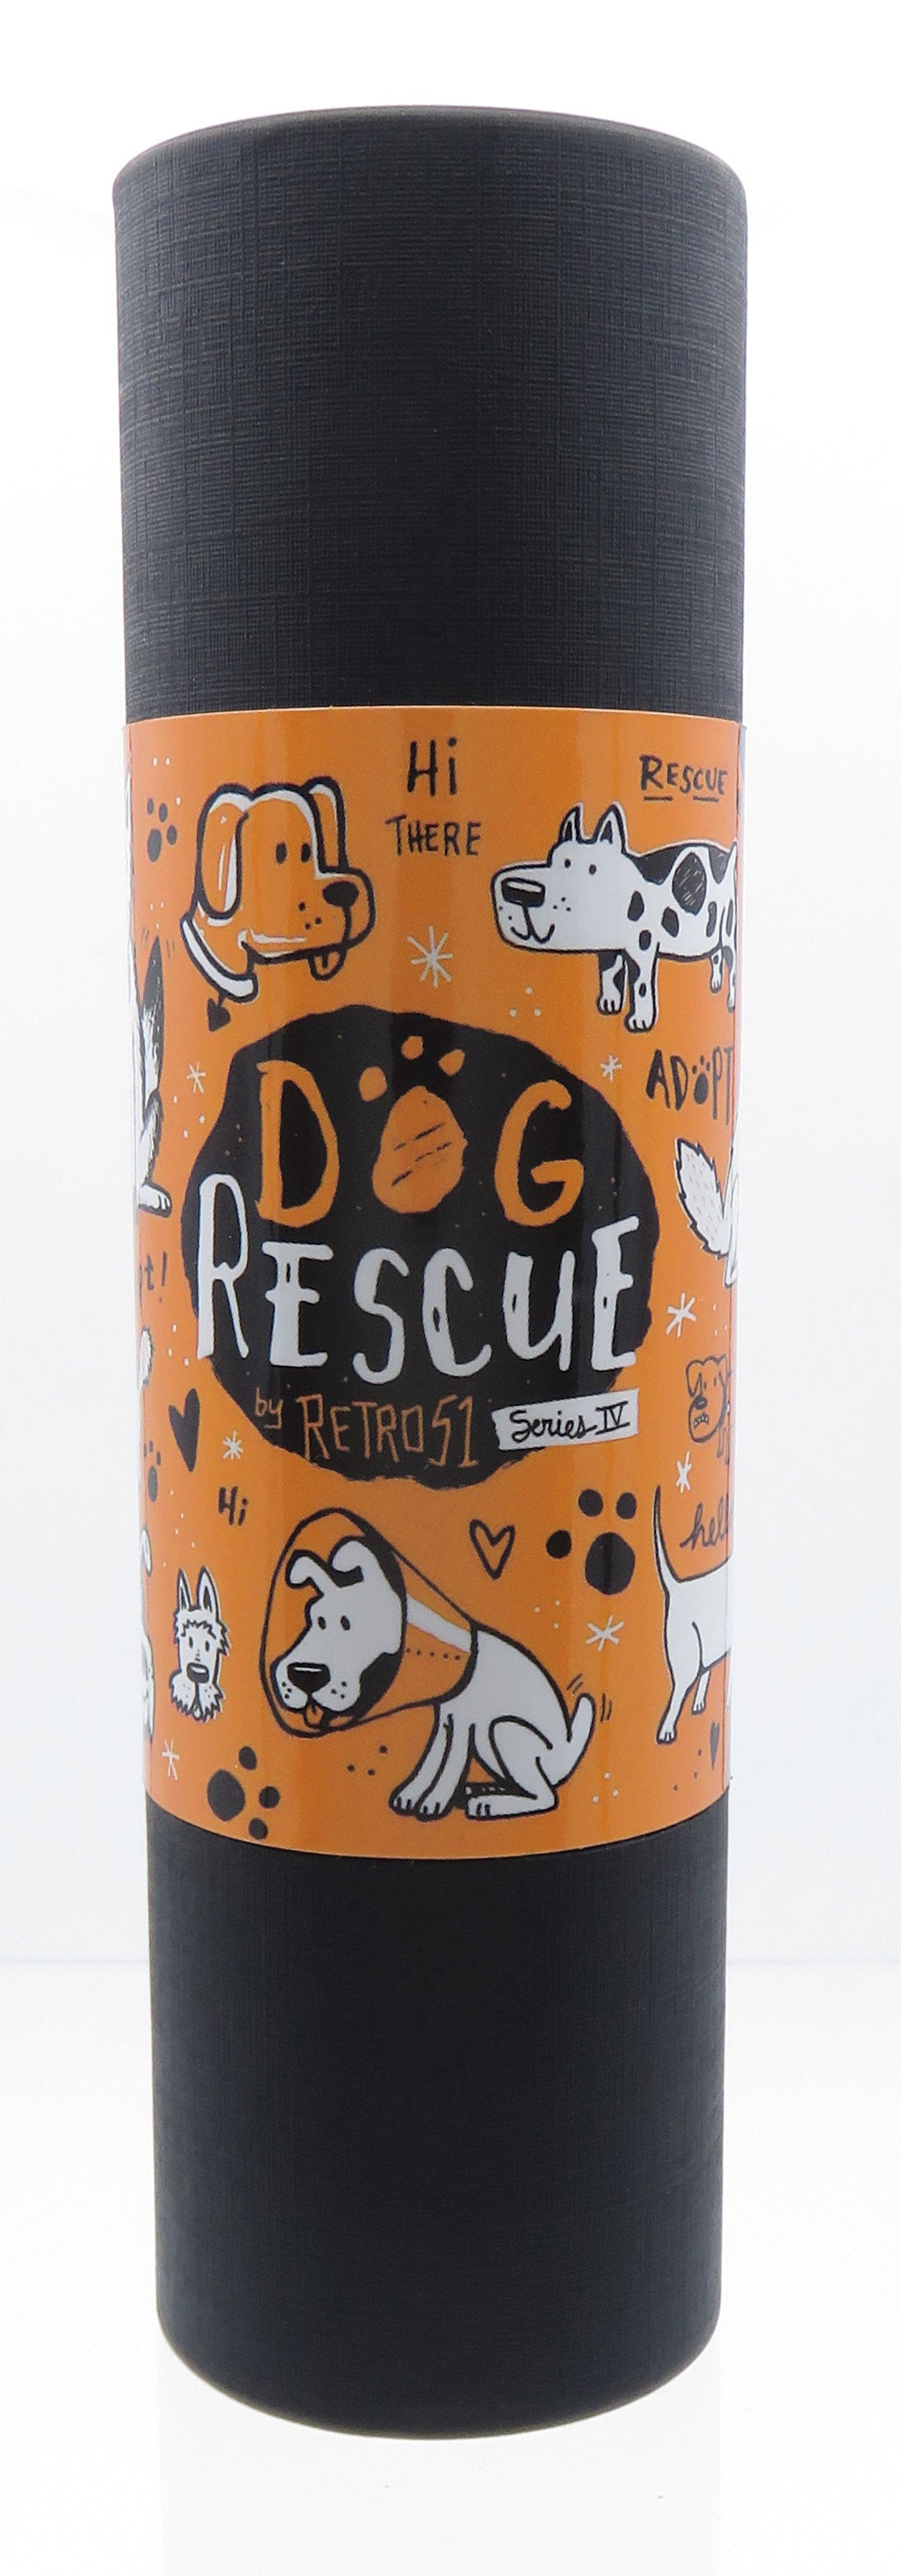 Retro 1951 "Rescue" Dog Rescue Ballpoint Edition 4